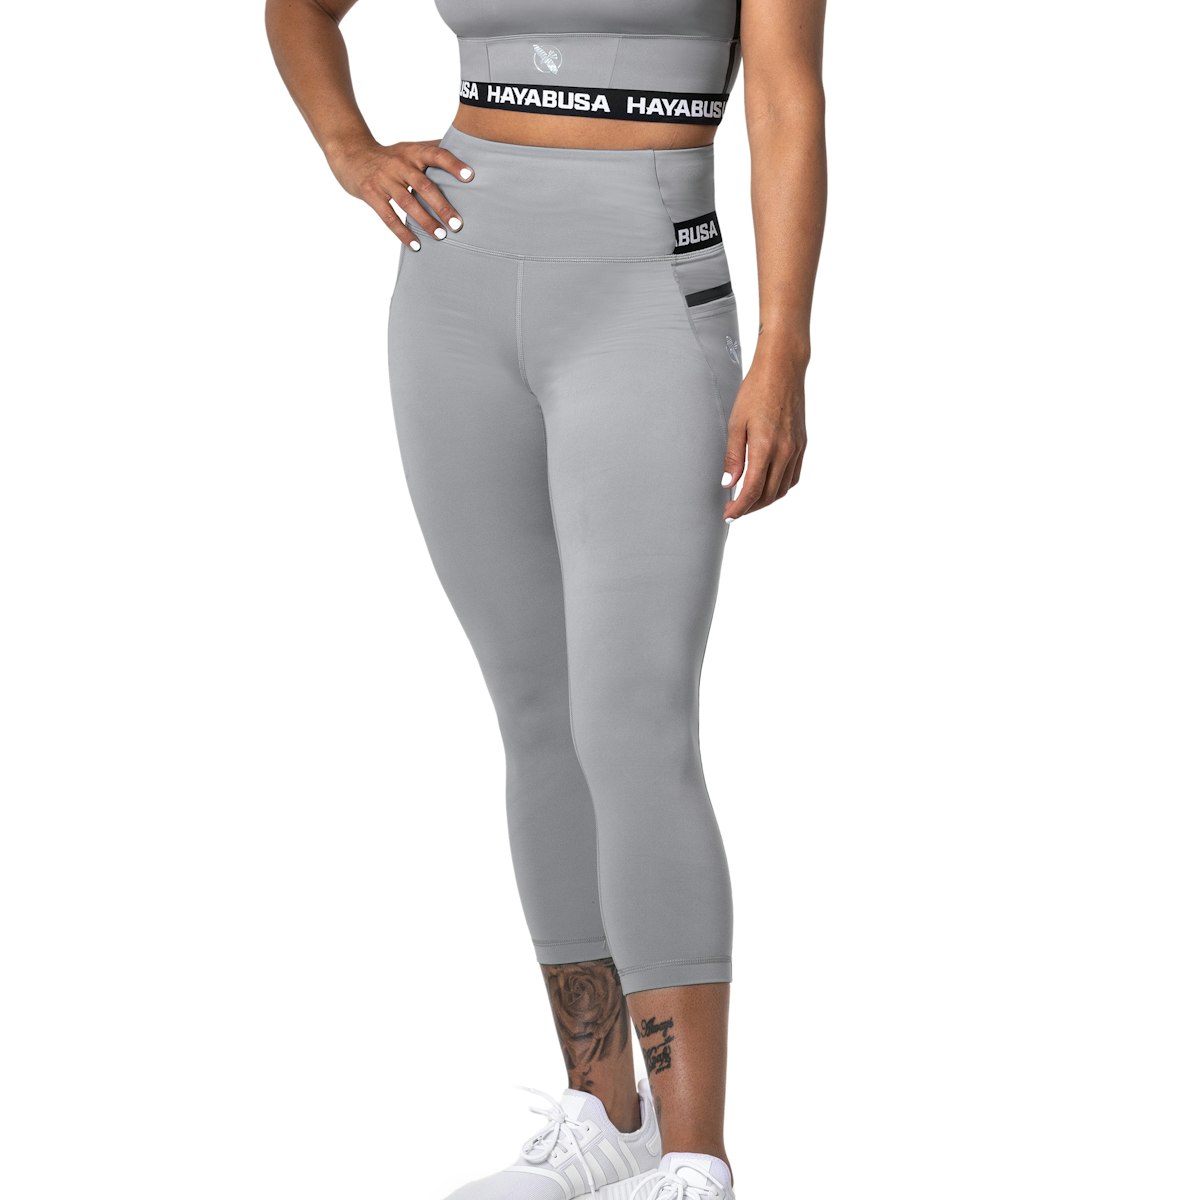 309TR Women's high-shine leggings